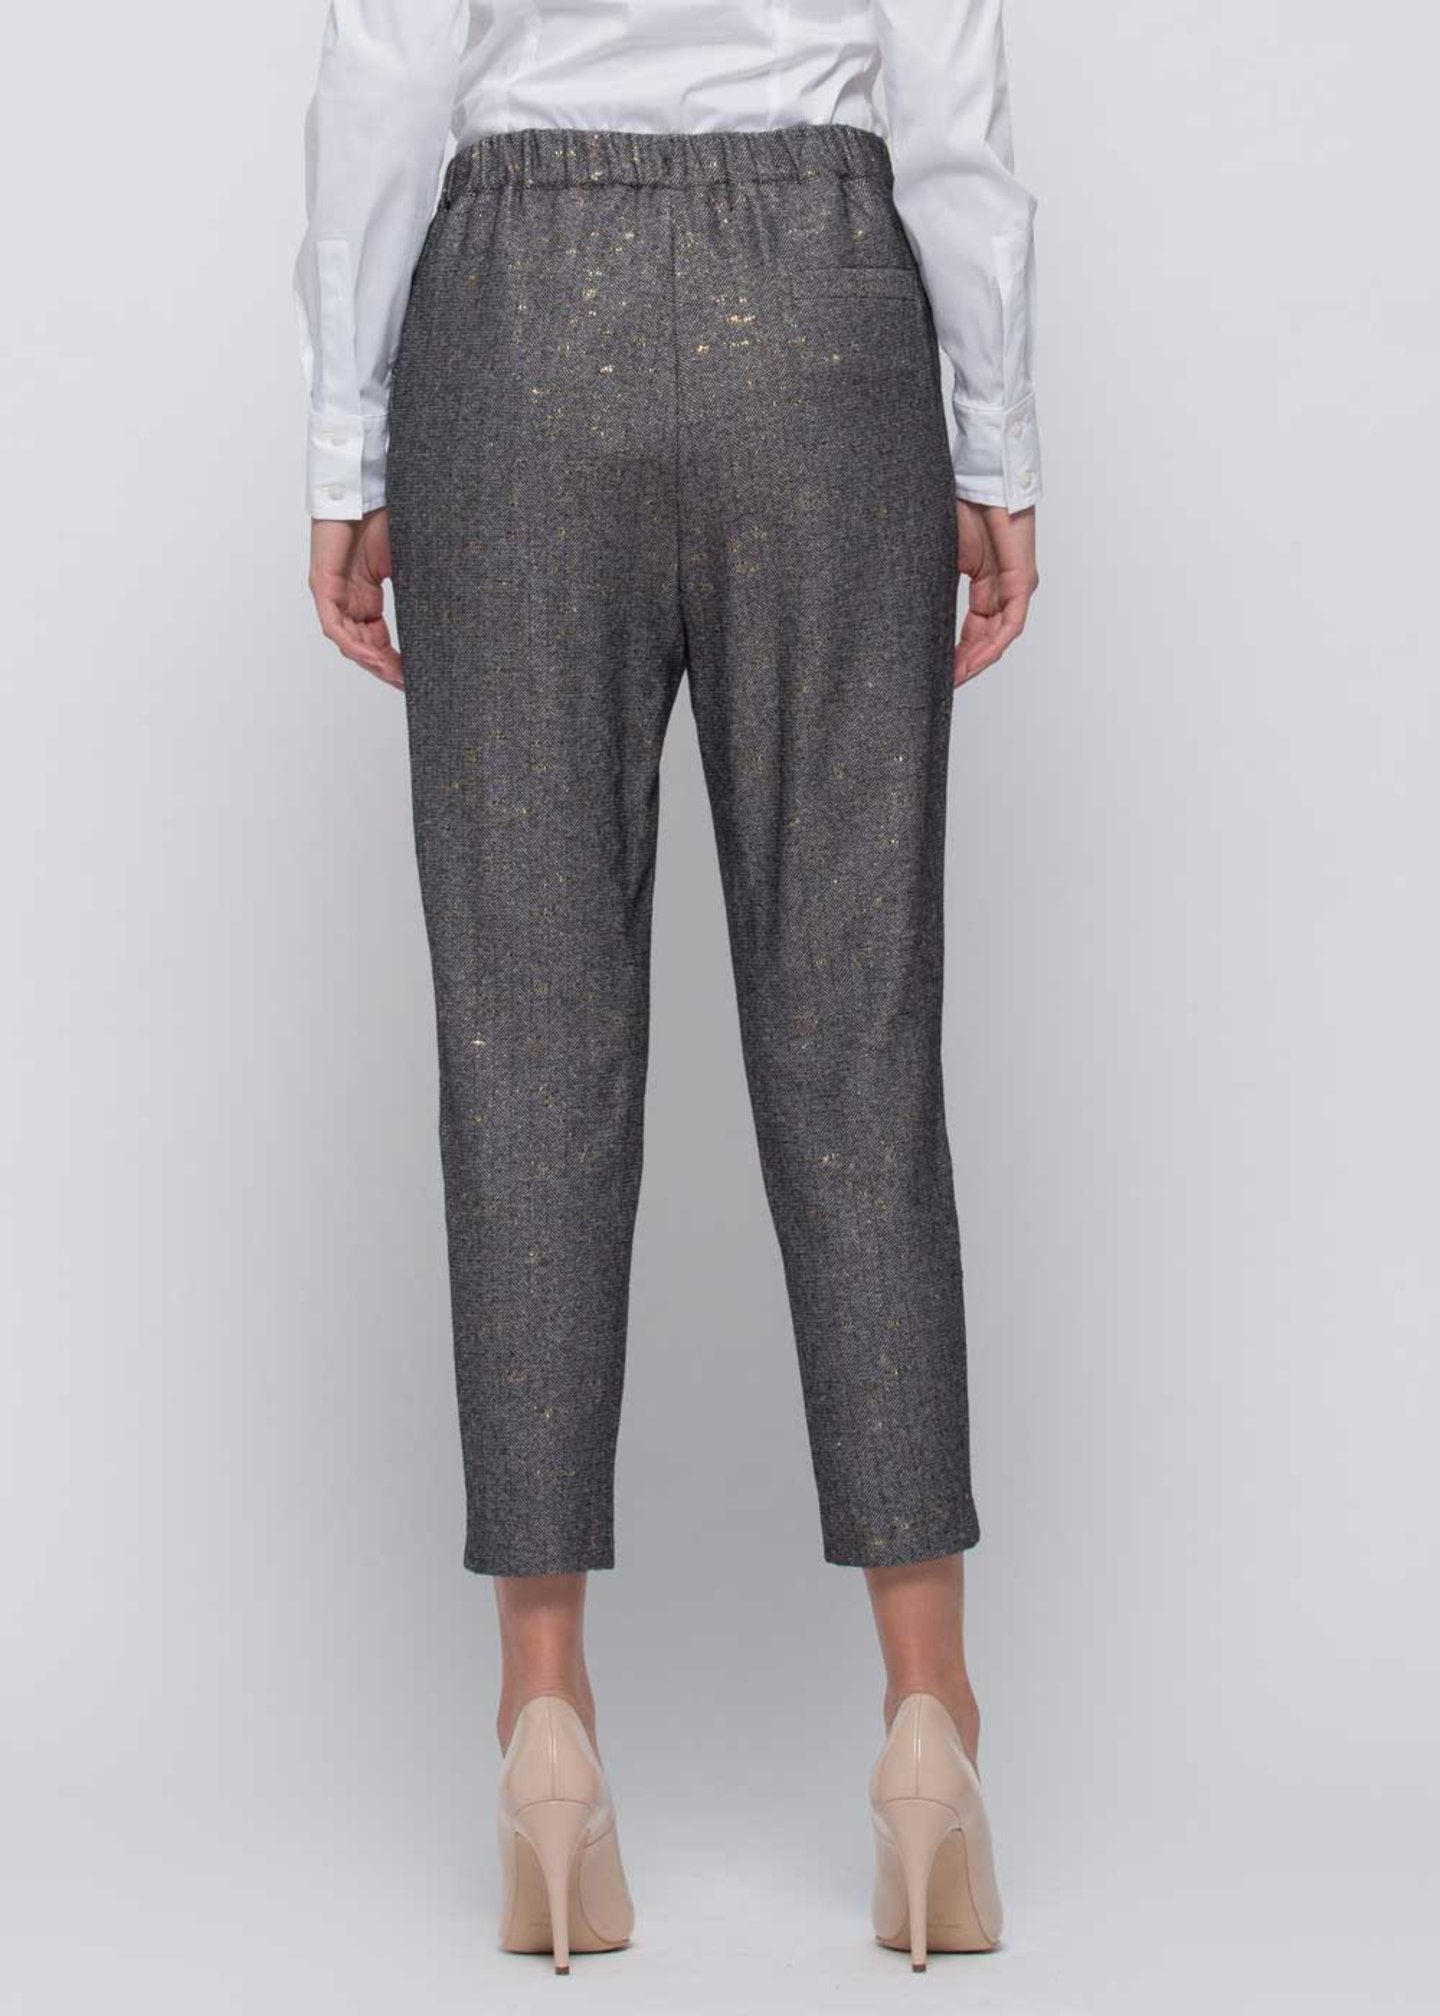 Pantalone Kocca con Laccio / Nero - Ideal Moda